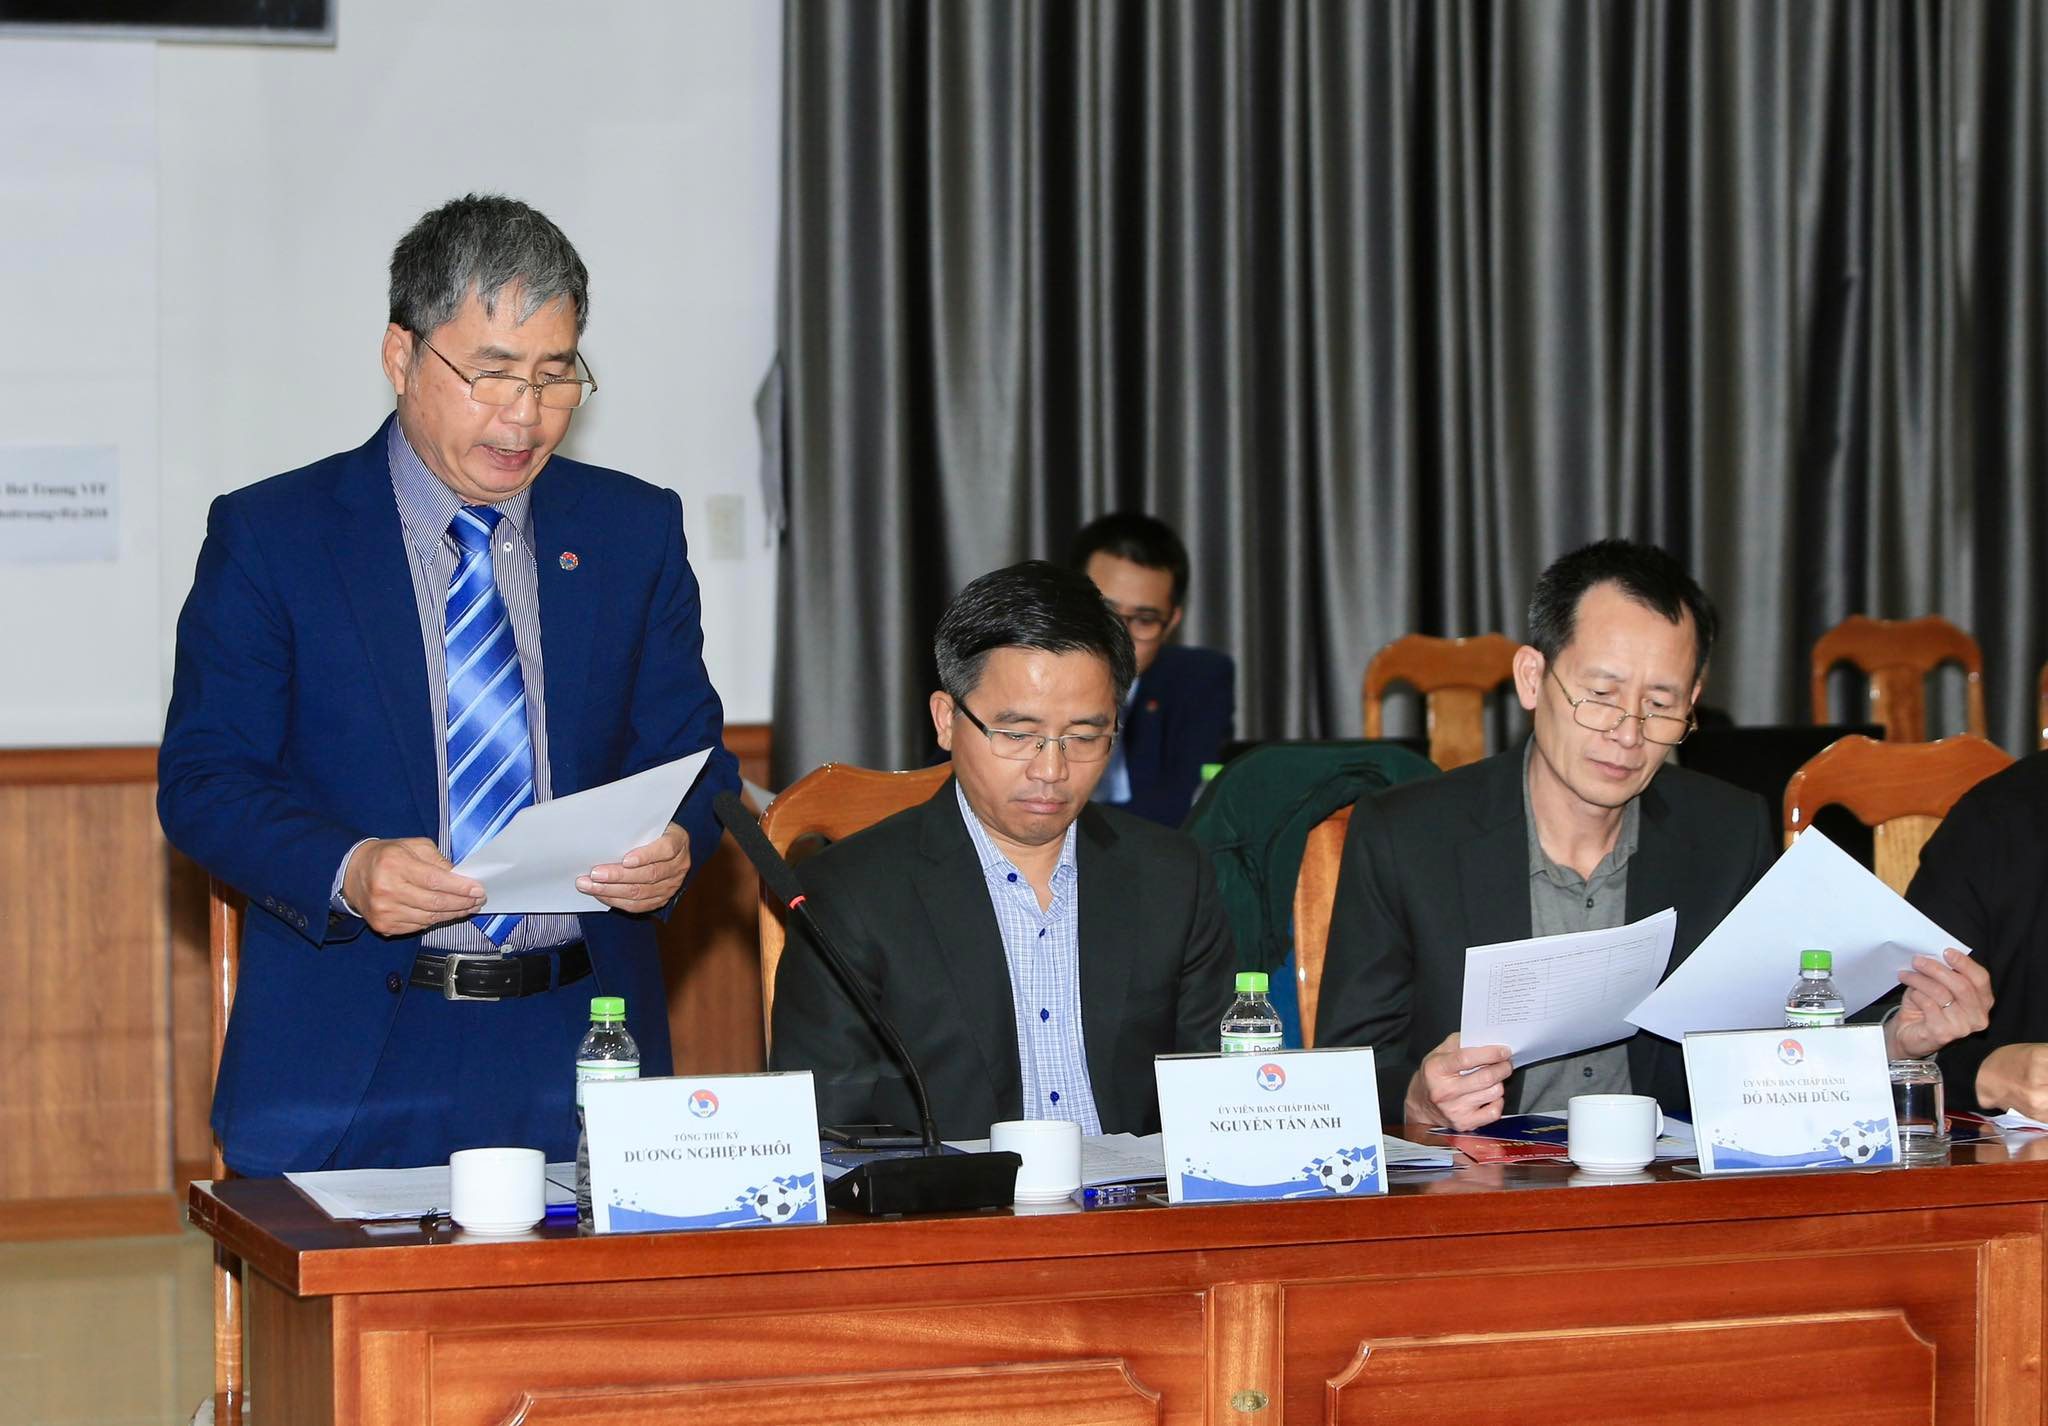 Tổng thư ký Dương Nghiệp Khôi báo cáo kế hoạch quan trọng trong năm 2023 cần BCH phê duyệt trong Hội nghị BCH - Ảnh: Đức Cường  